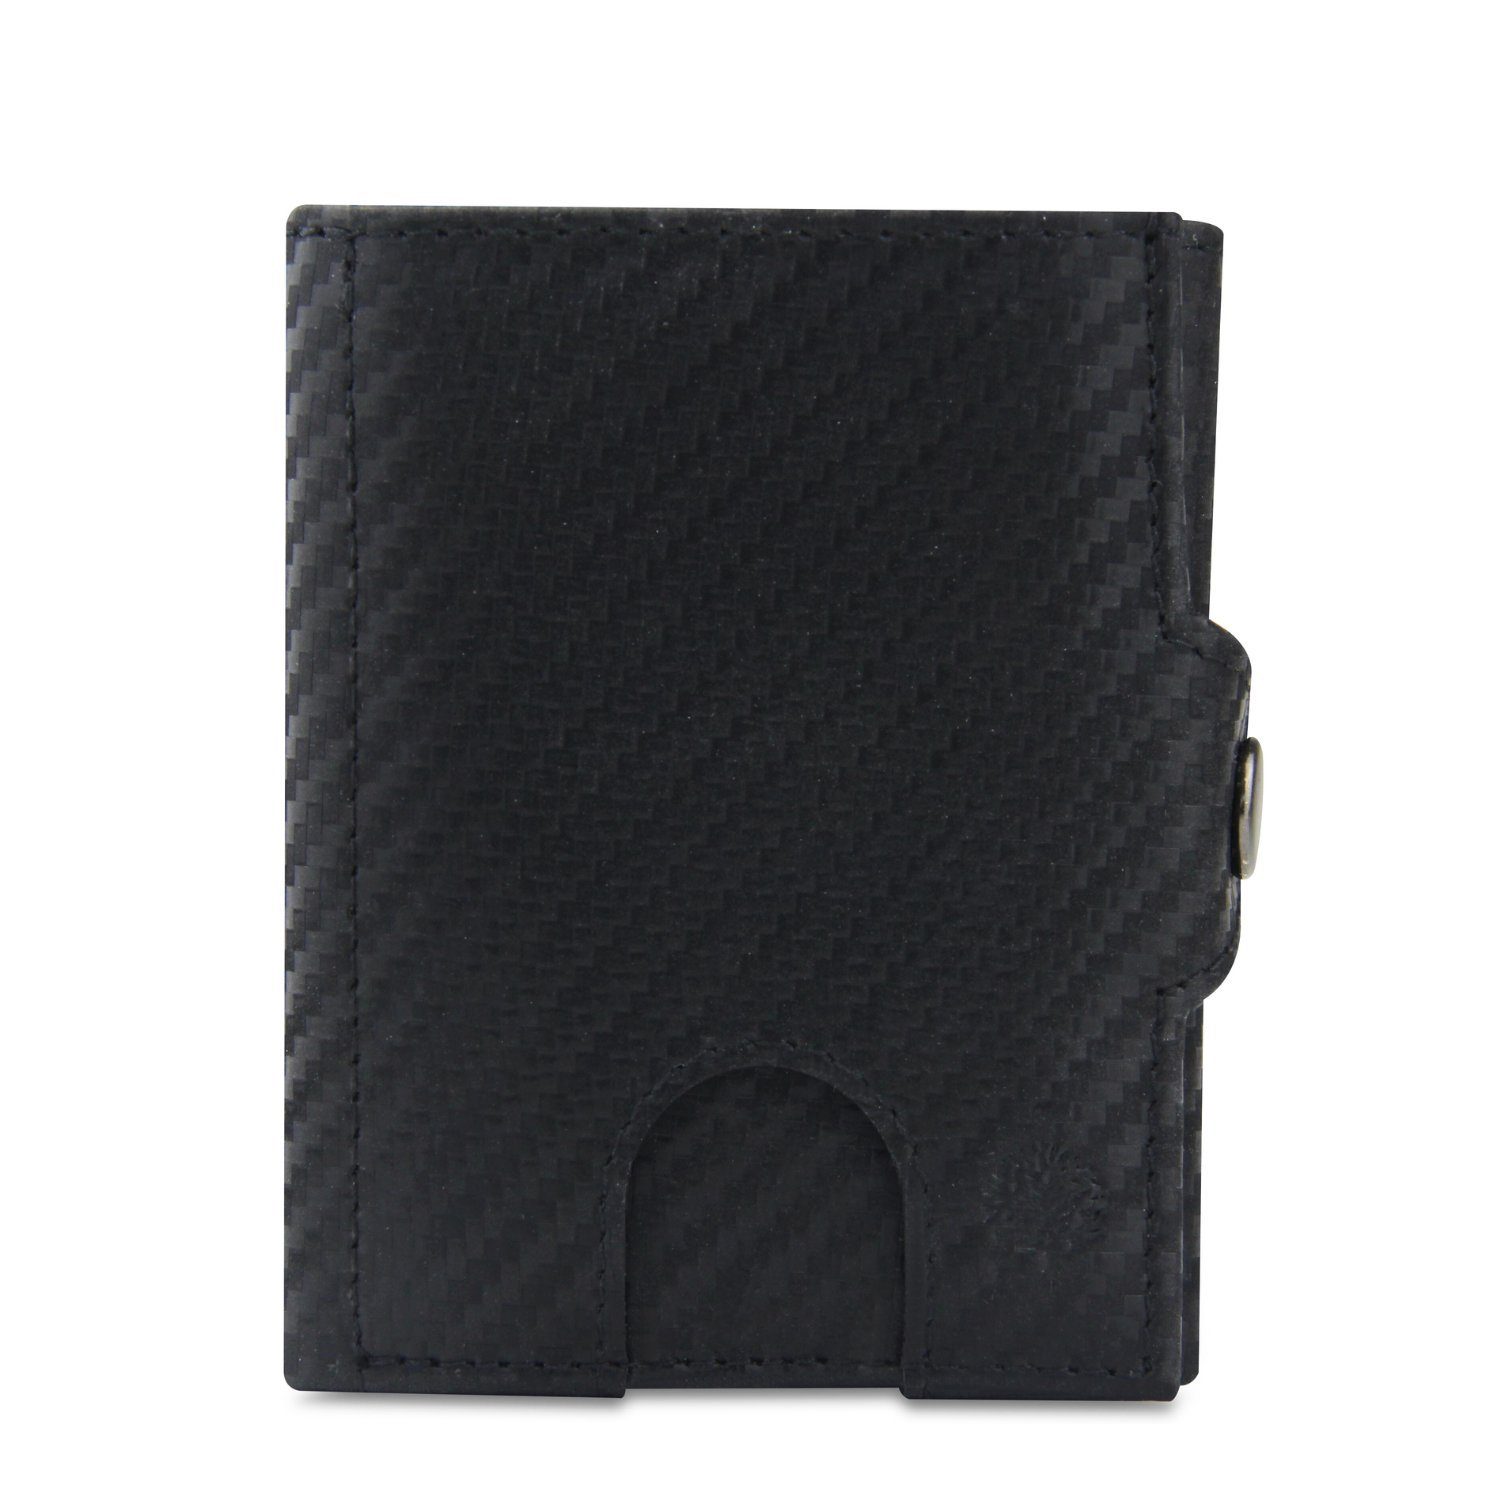 Frentree Mini Geldbörse Slim Wallet mit RFID-Schutz - Geldbörse aus echtem Leder - Mini, Geldbeutel mit Münzfach - Echtleder Portemonnaie Kartenetui Klein Carbon